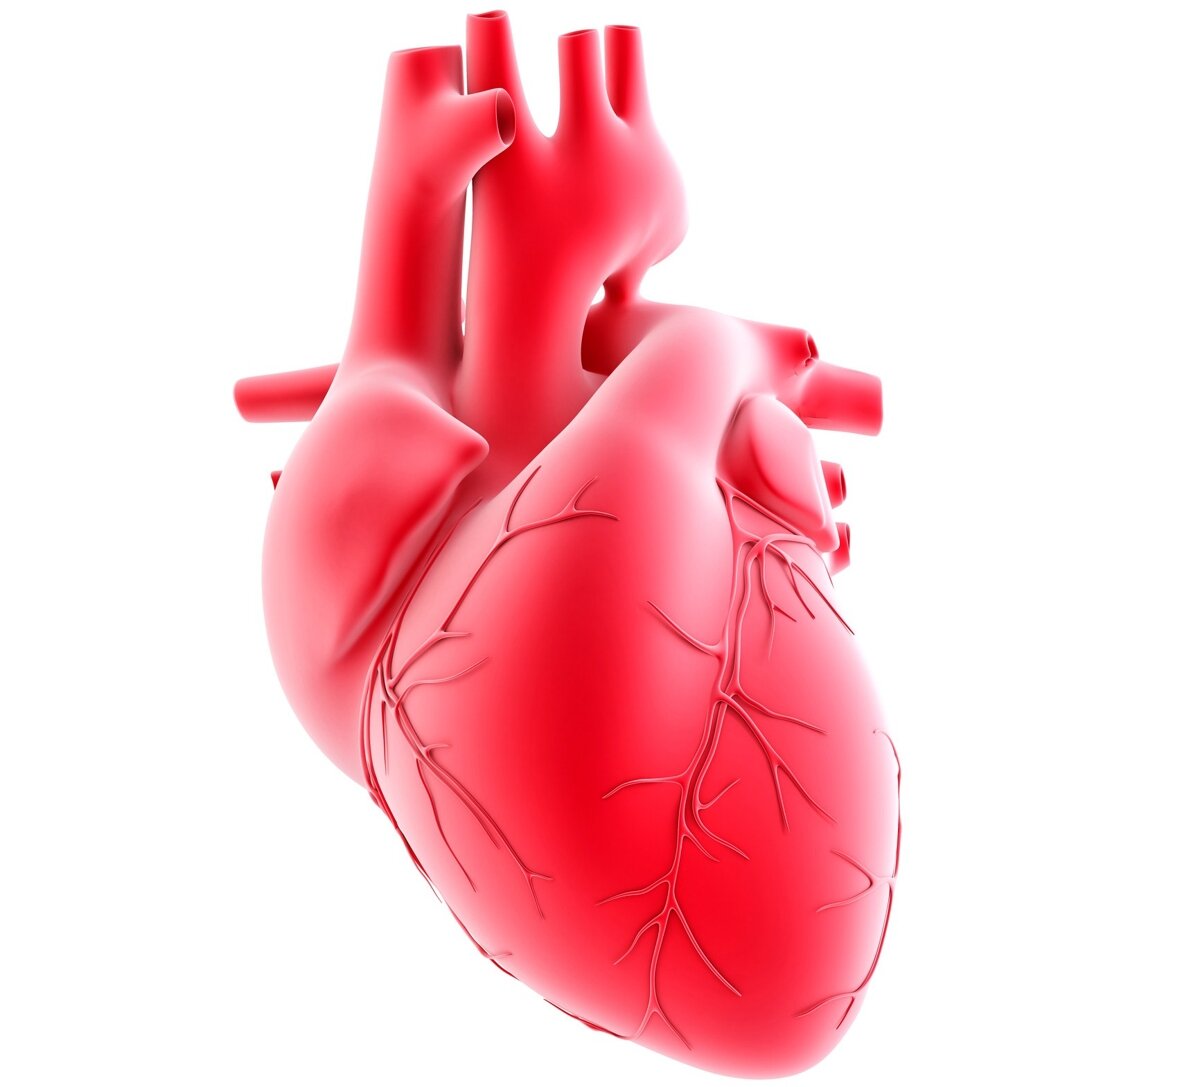 Сердце человека в разрезе: изображения без лицензионных платежей